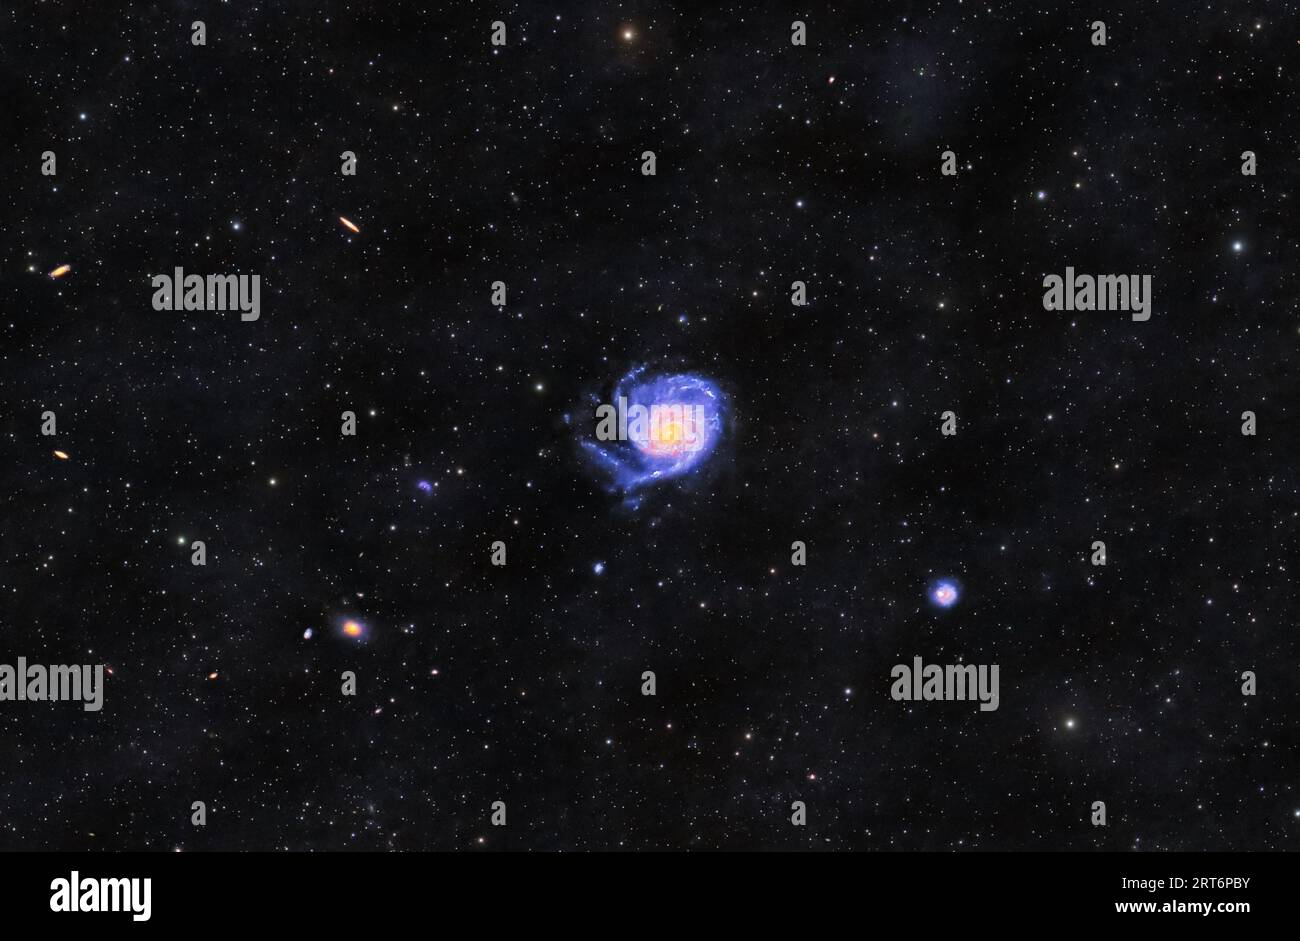 Entra nel regno cosmico della Galassia di Pinwheel, nota anche come Messier 101. Questa bellezza a spirale, situata nella costellazione dell'Orsa maggiore. Foto Stock